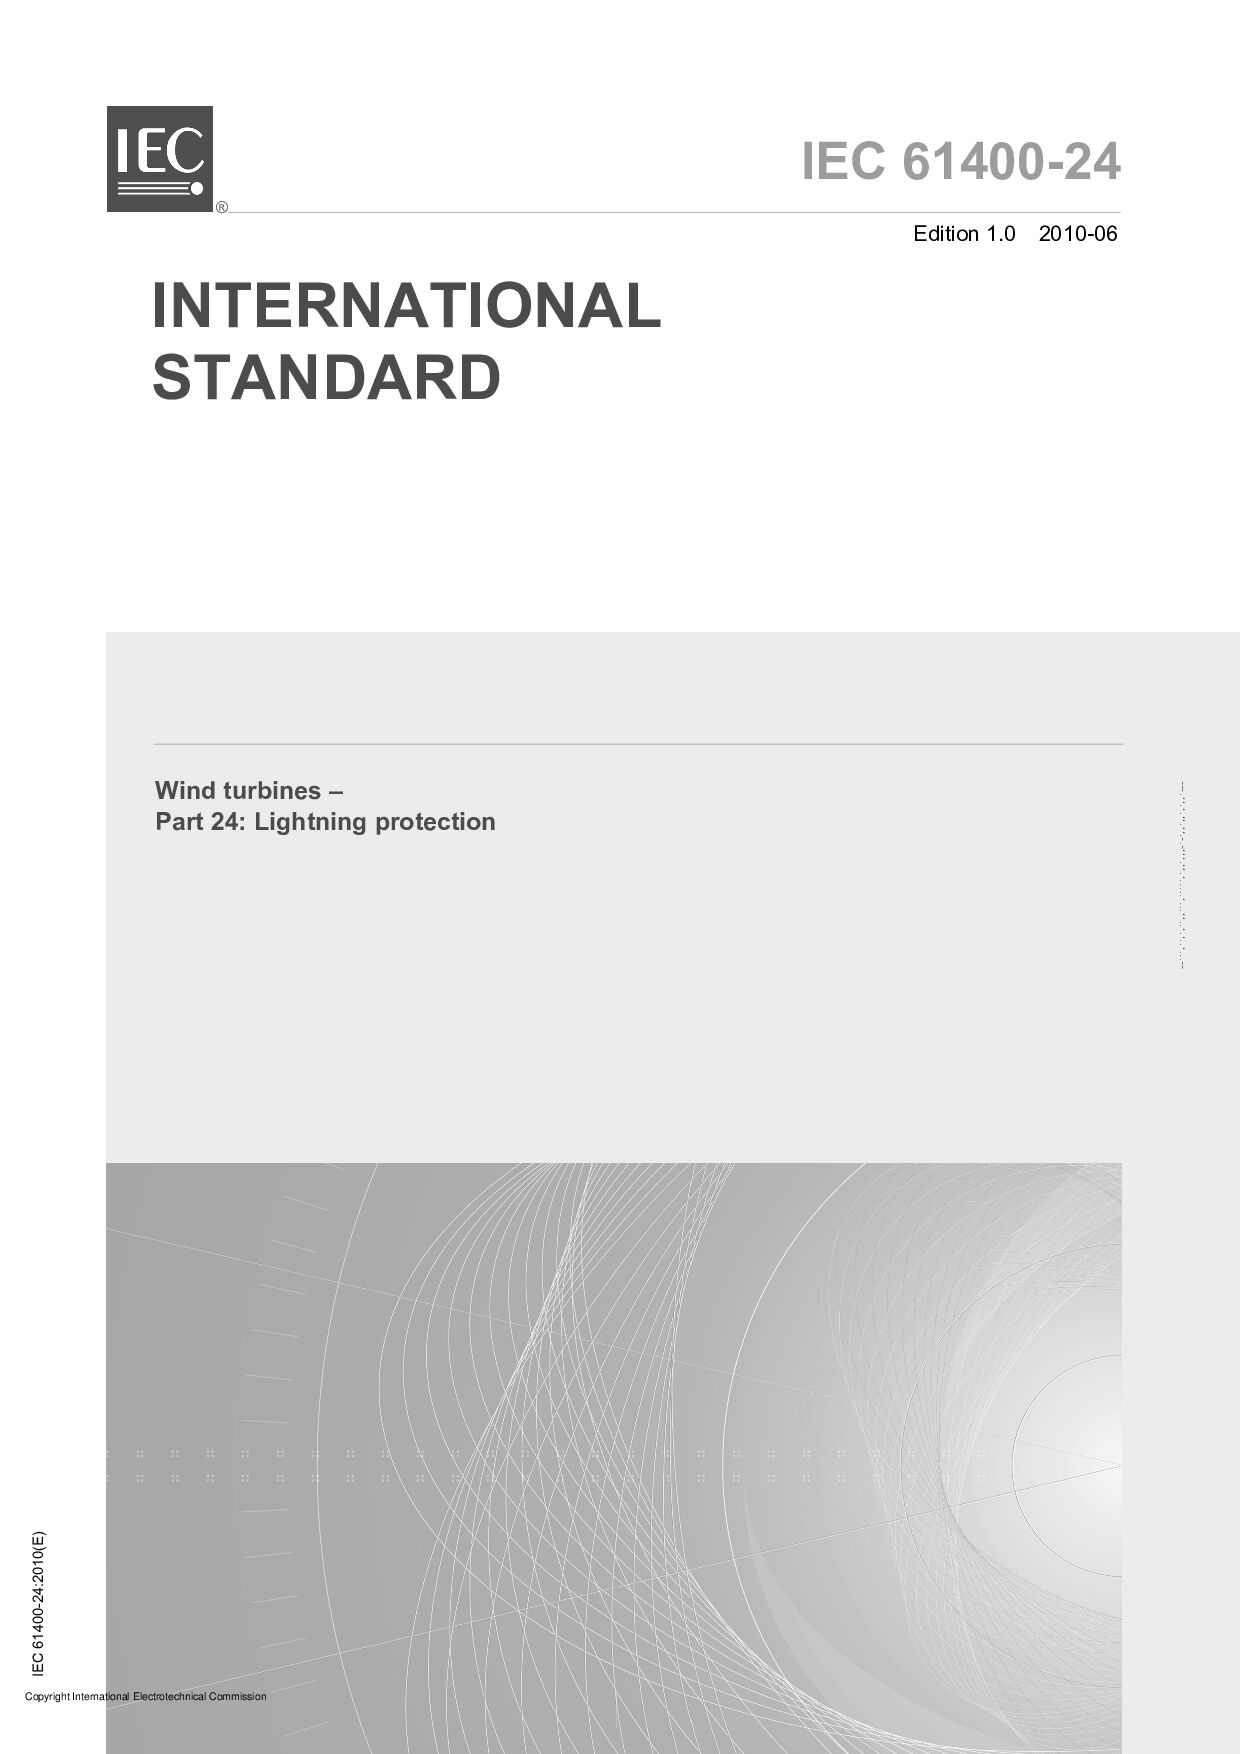 IEC 61400-24:2010封面图